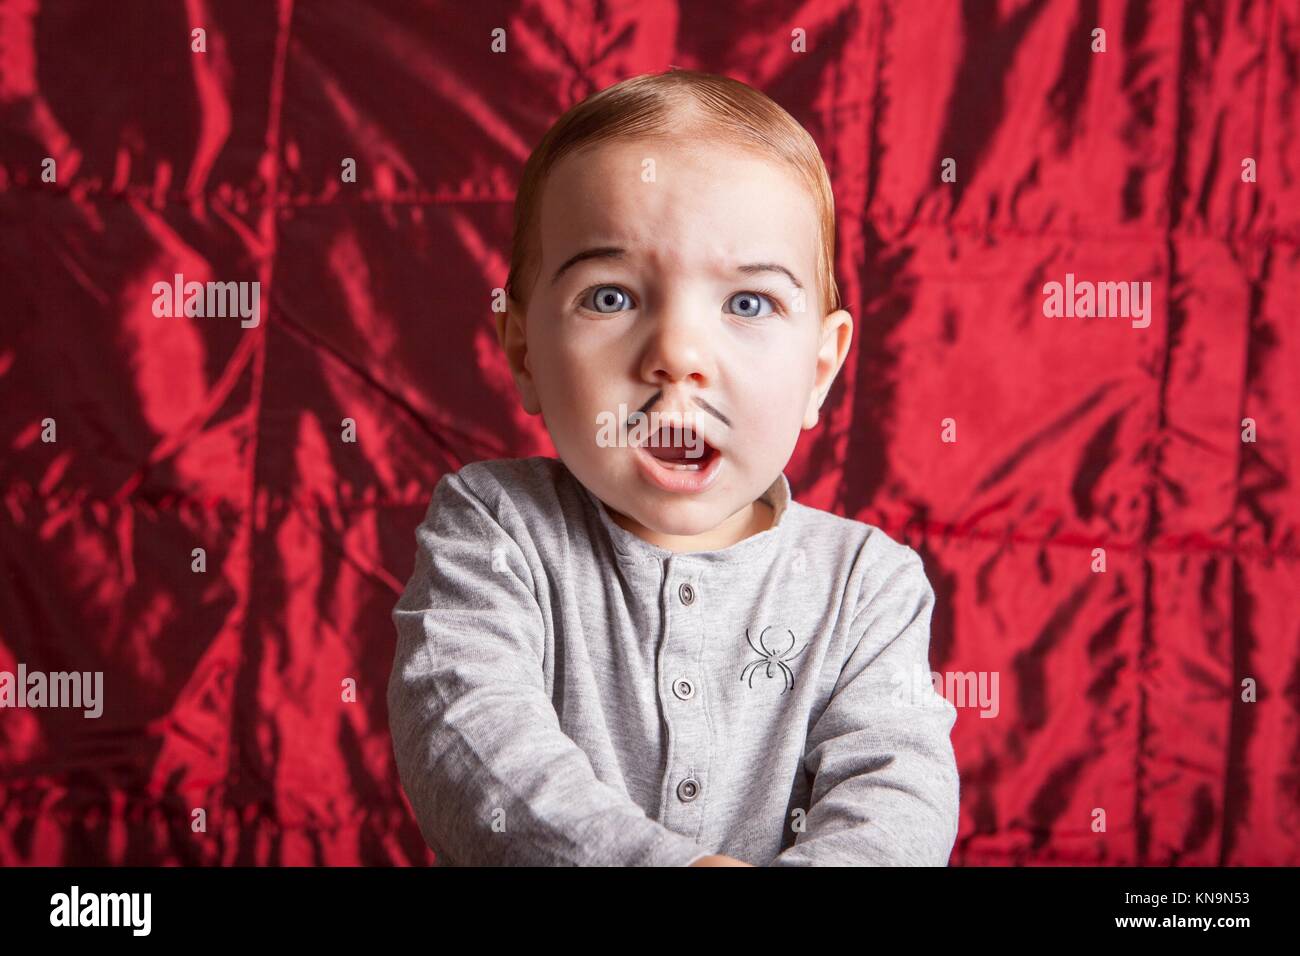 Retrato de un niño pequeño vestido para la fiesta de Halloween. Él tiene una expresión de sorpresa. Foto de stock